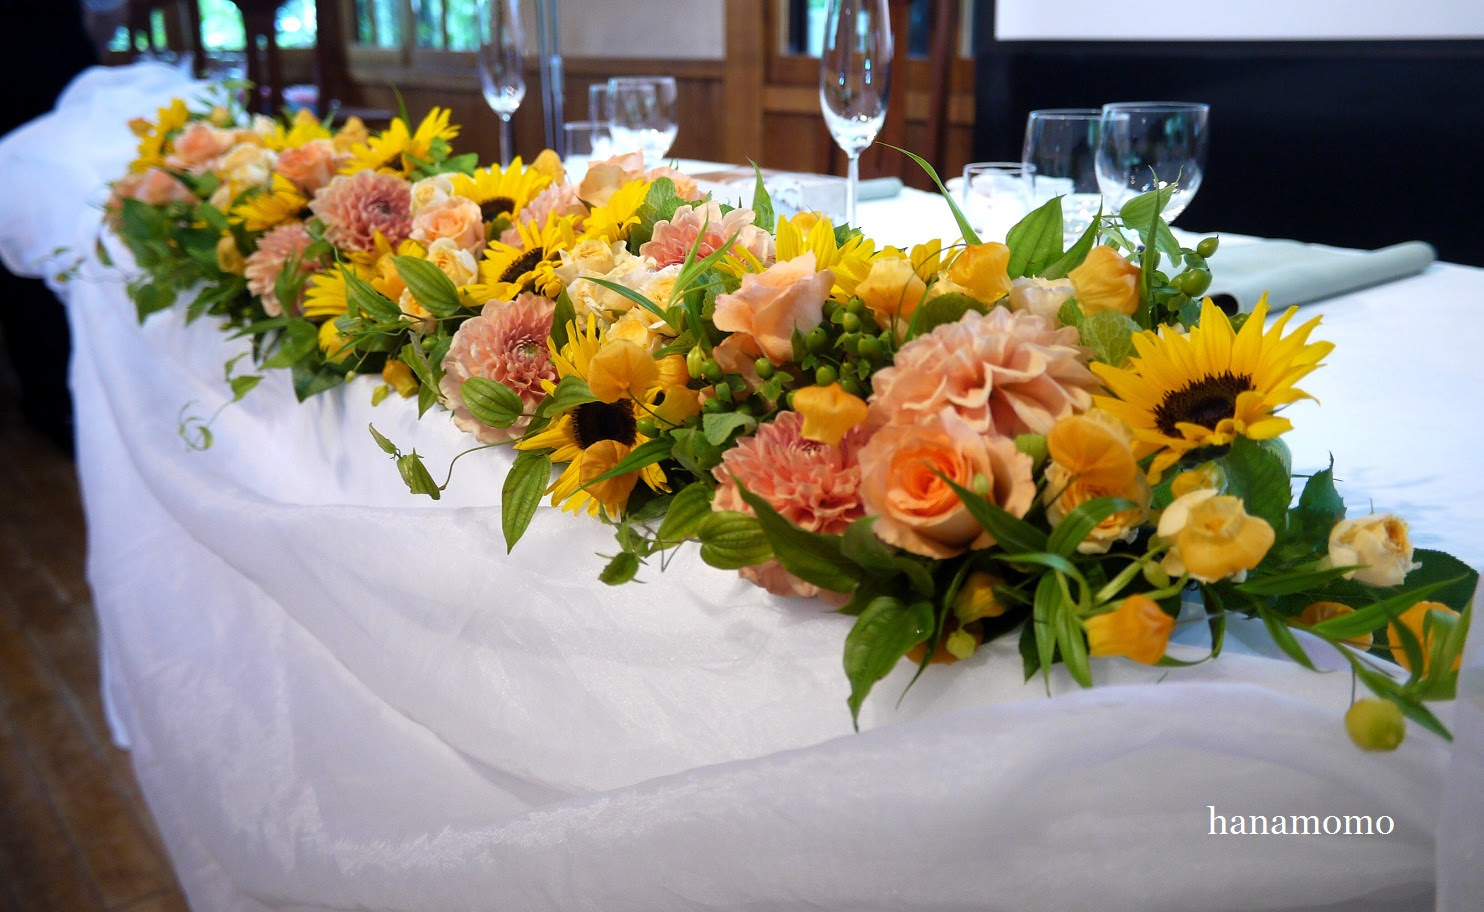 【50++】 結婚式 テーブル 花 オレンジ 無料 1000+ 画像コレクション